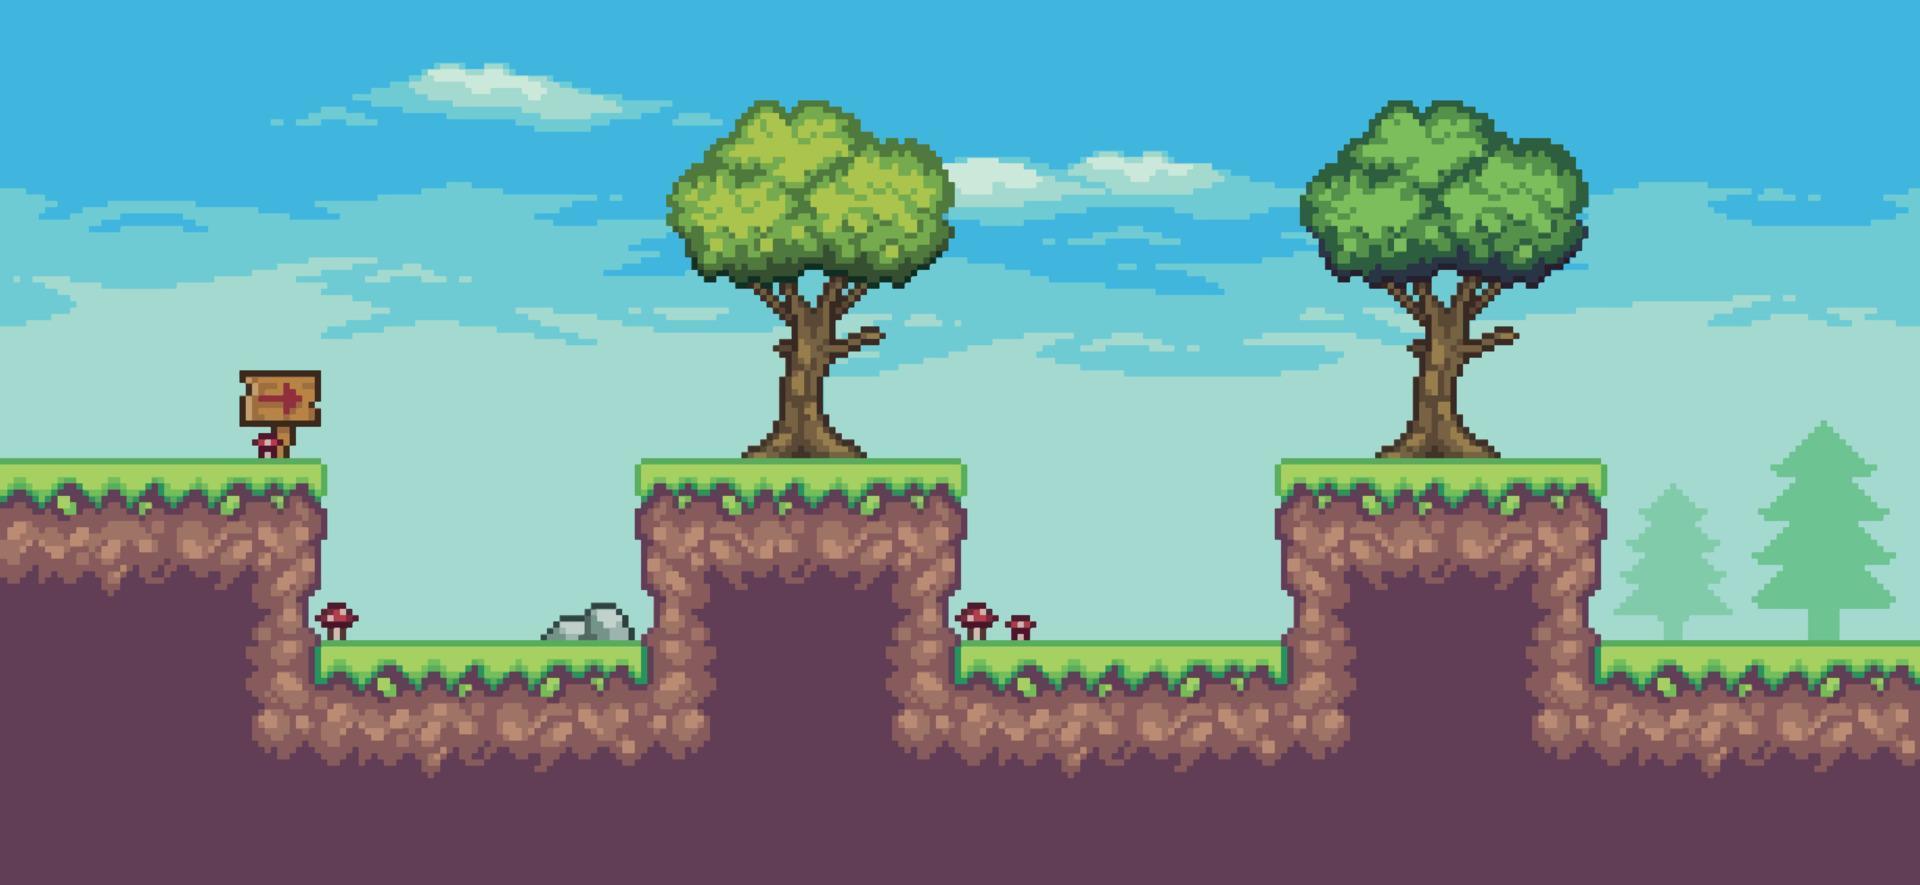 scène de jeu d'arcade pixel art avec arbres, planche de bois et nuages fond vectoriel 8 bits